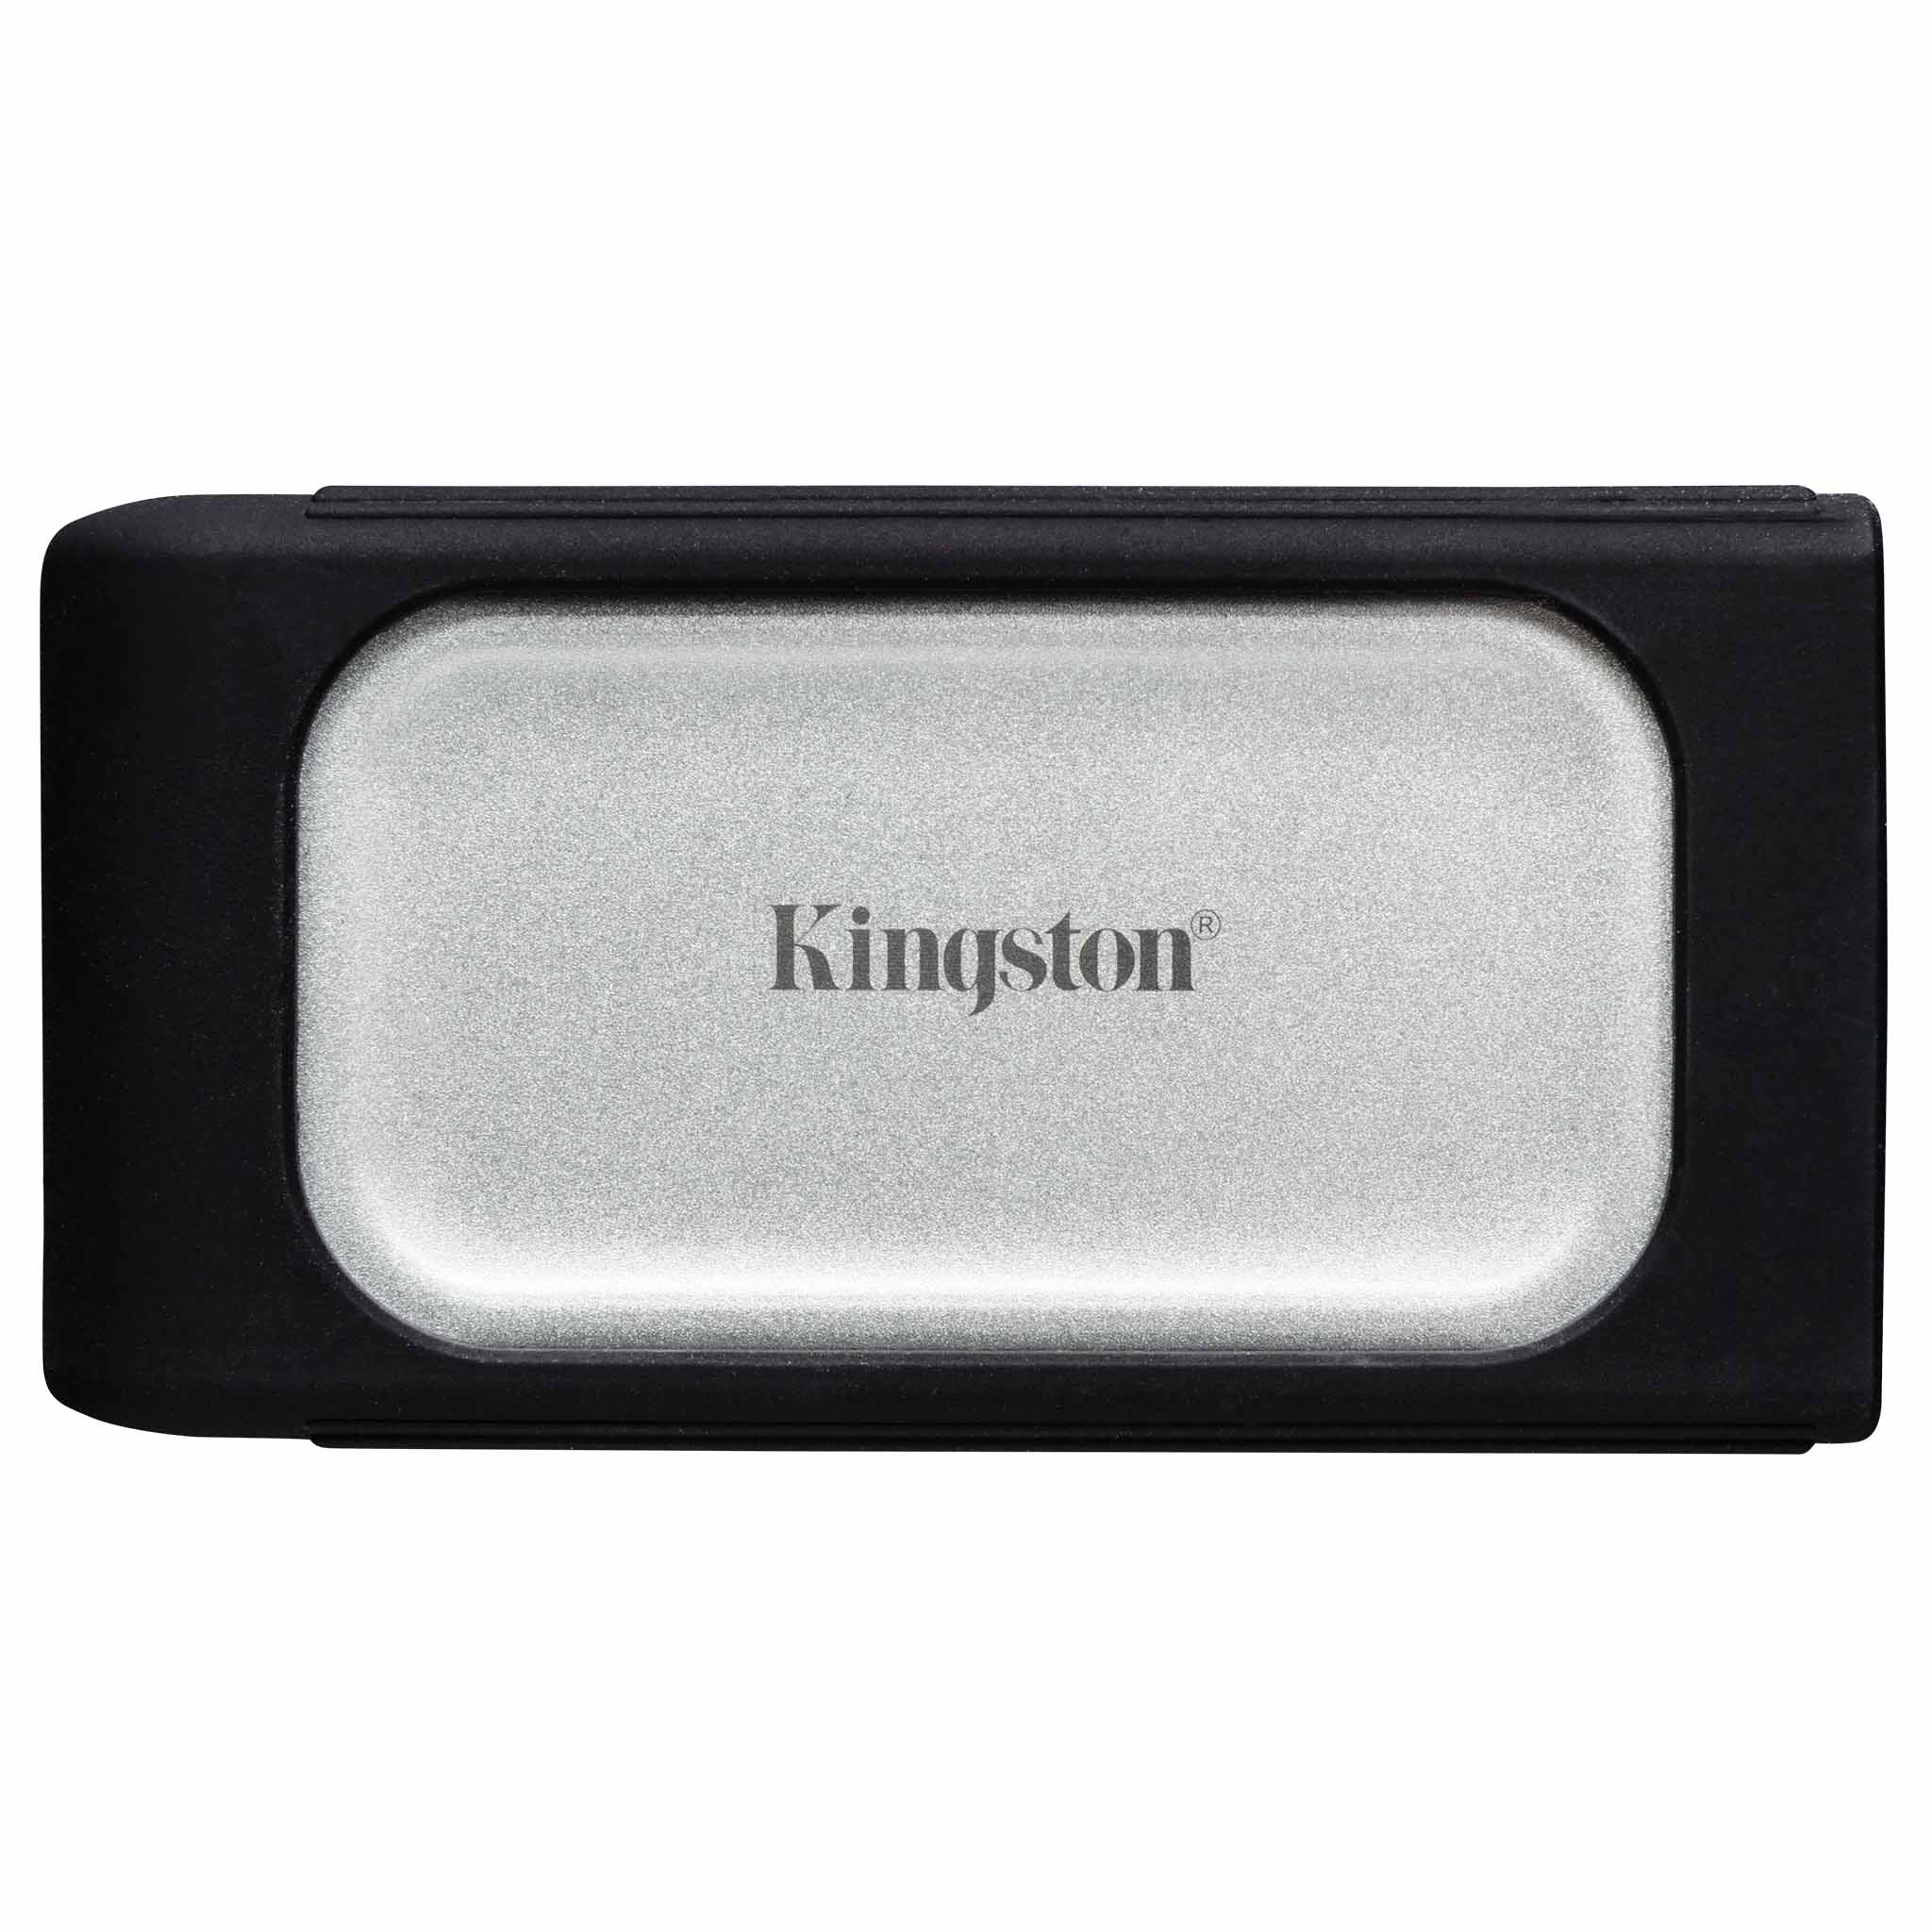 Disco Externo SSD Kingston XS2000 de 4TB 